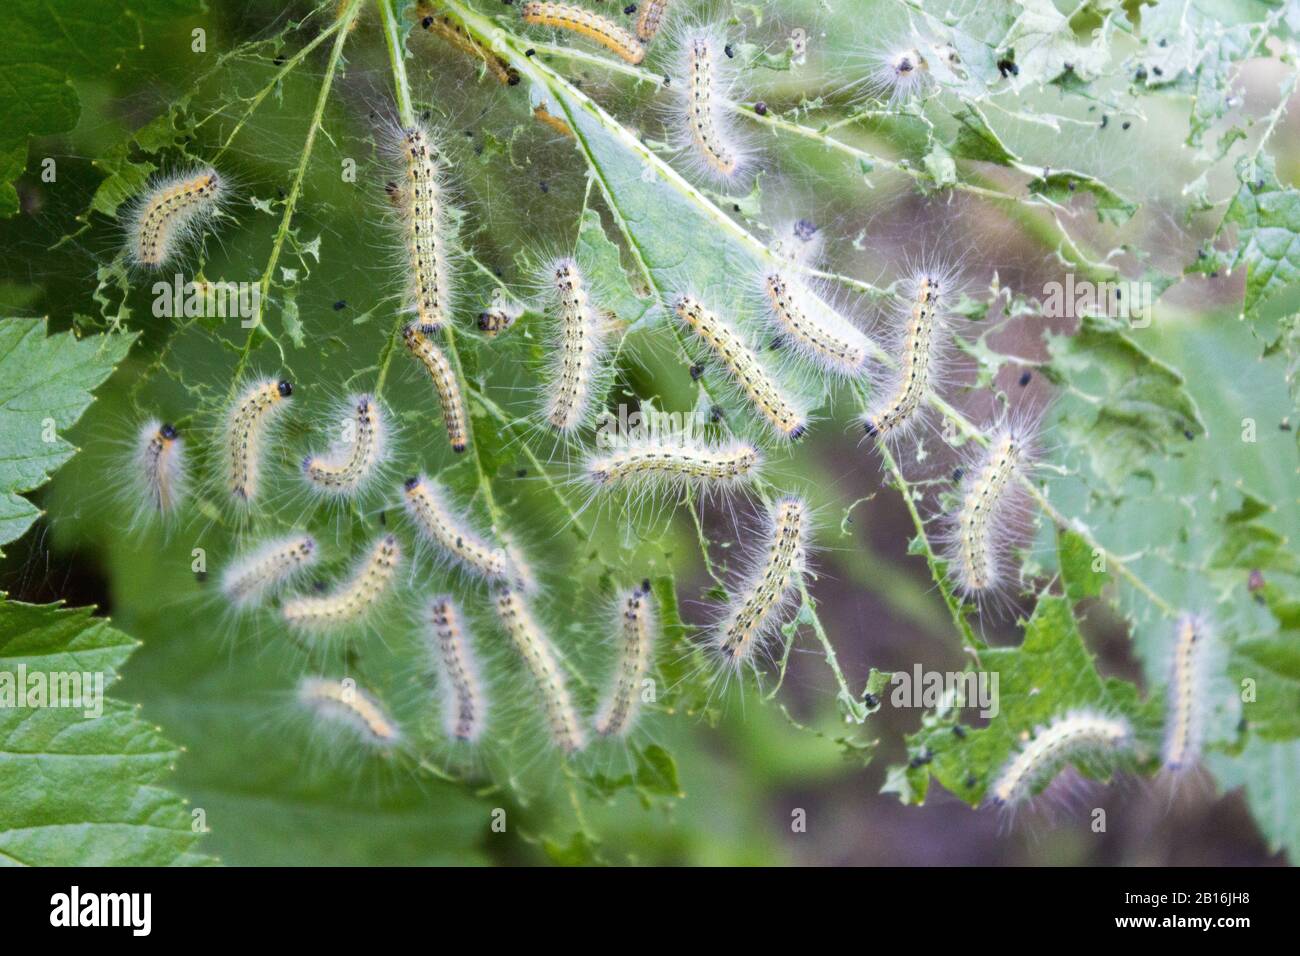 Gartenbauschädling ist eine Raupe, die Rasterblätter frisst. Larve einer Motte auf den Blättern fruchtbarer Büsche und Bäume. Stockfoto